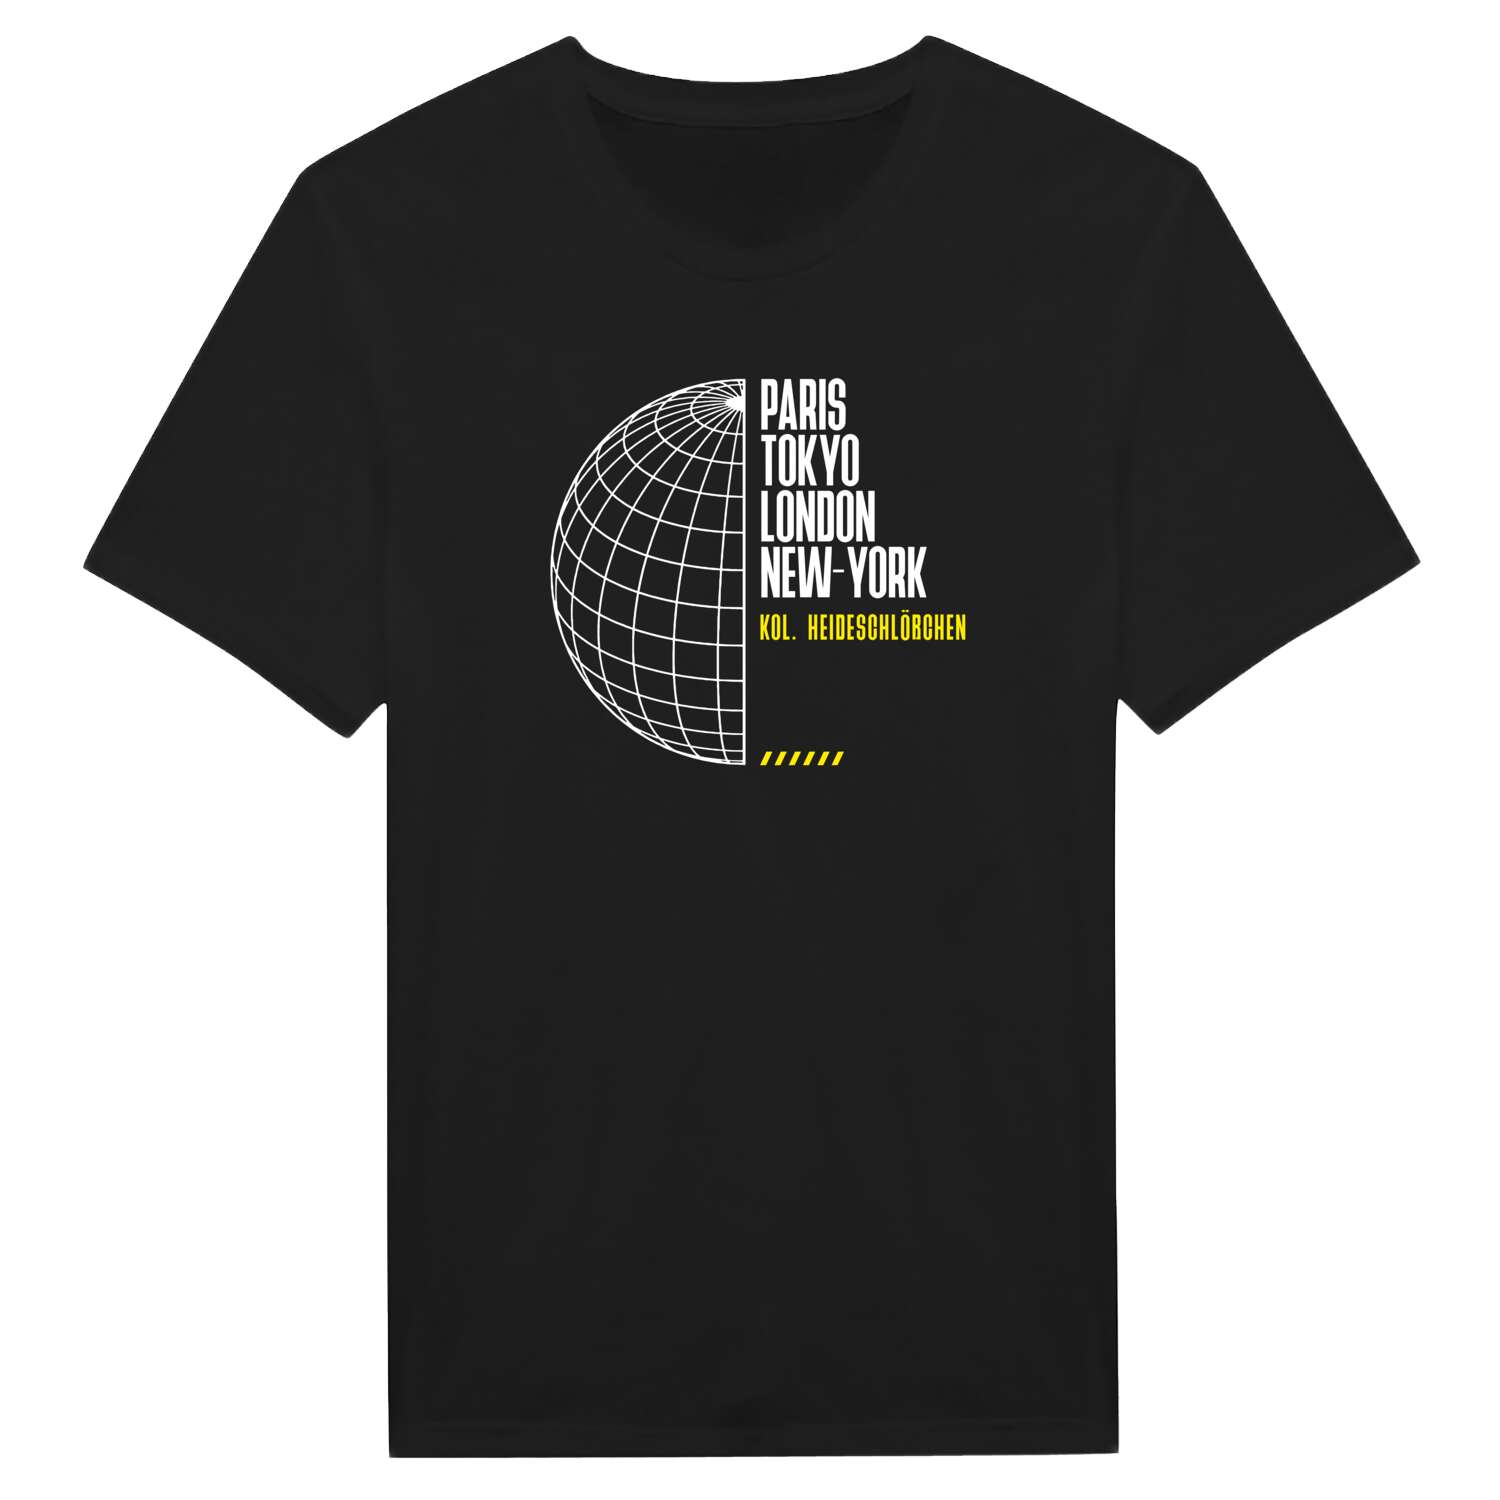 Kol. Heideschlößchen T-Shirt »Paris Tokyo London«